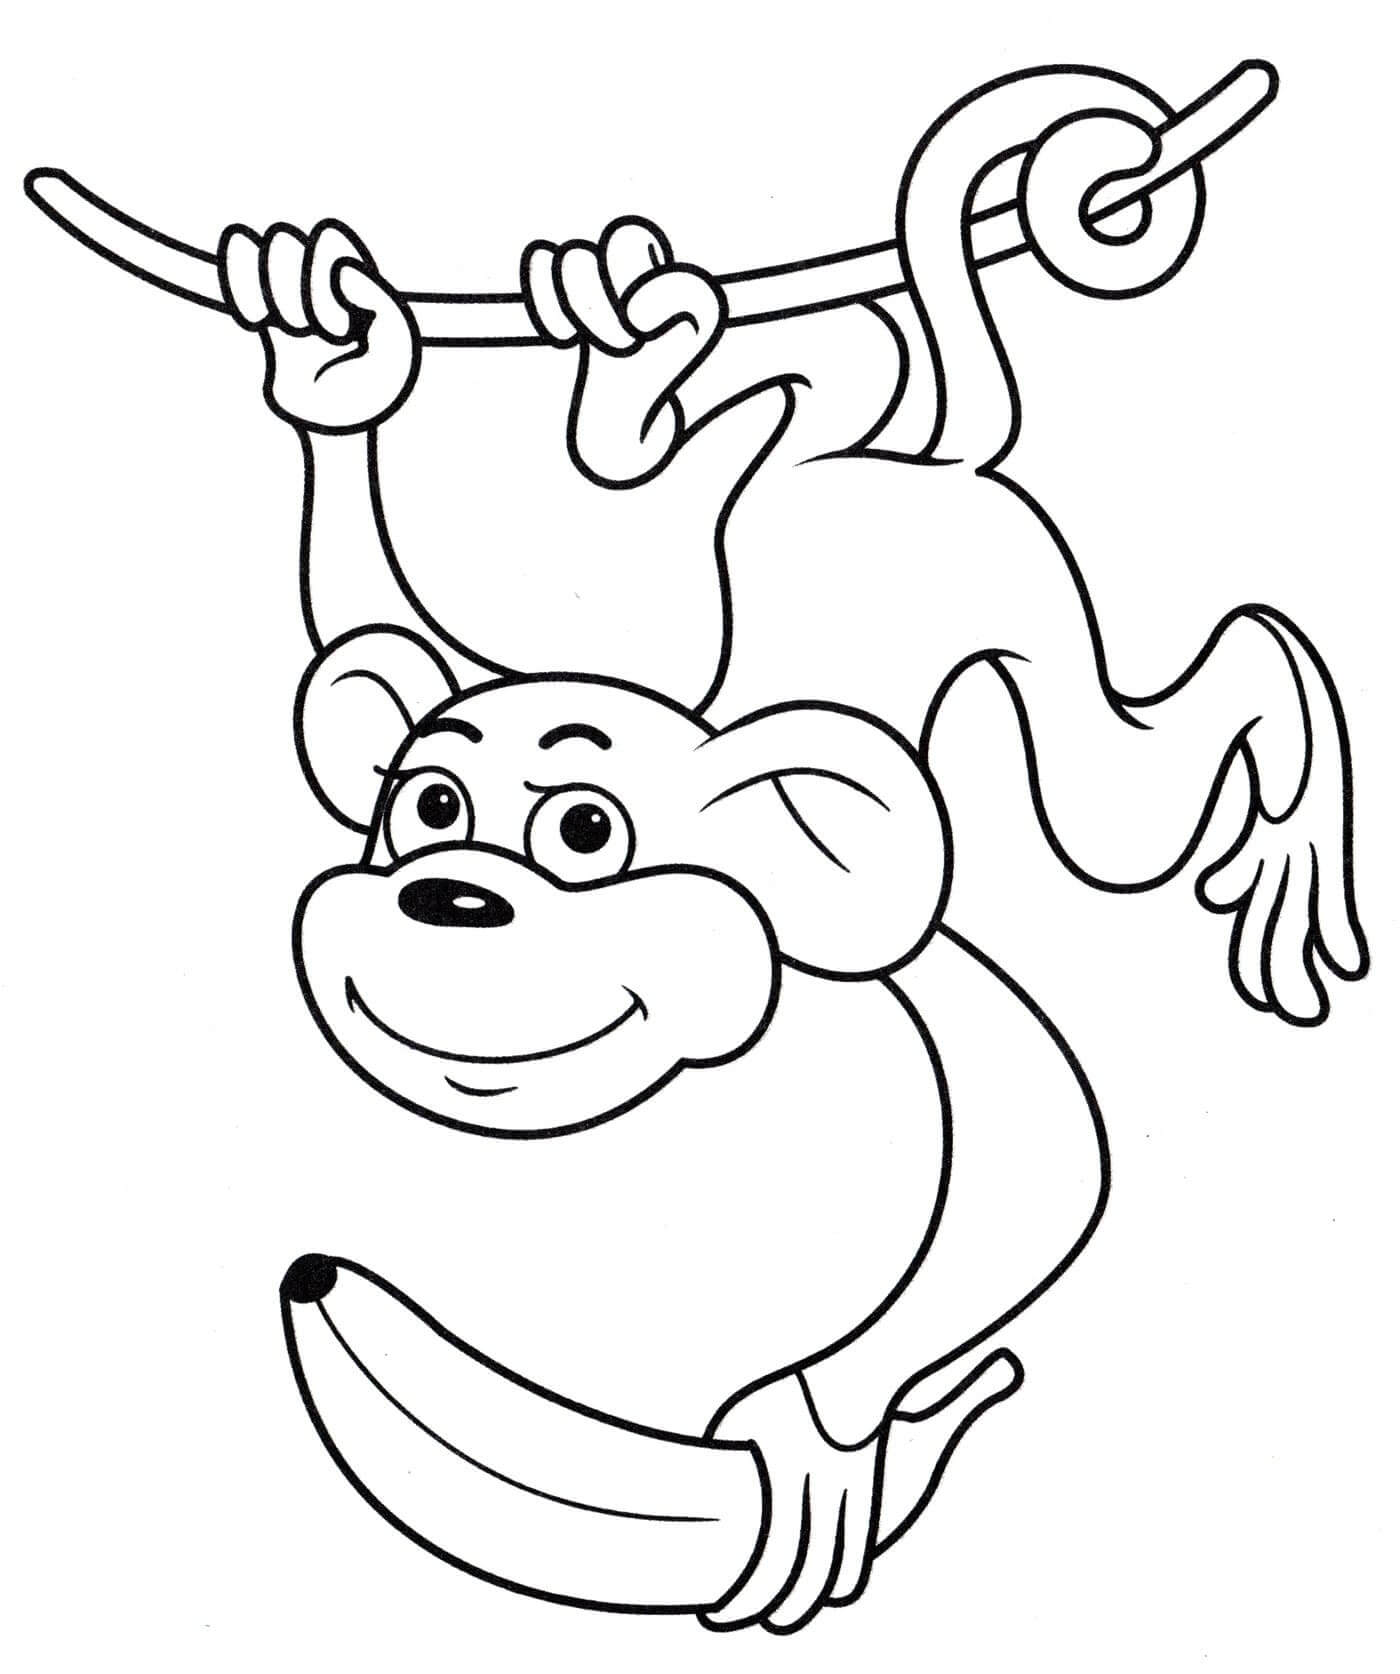 원숭이는 바나나와 등반 로프를 잡습니다. coloring page